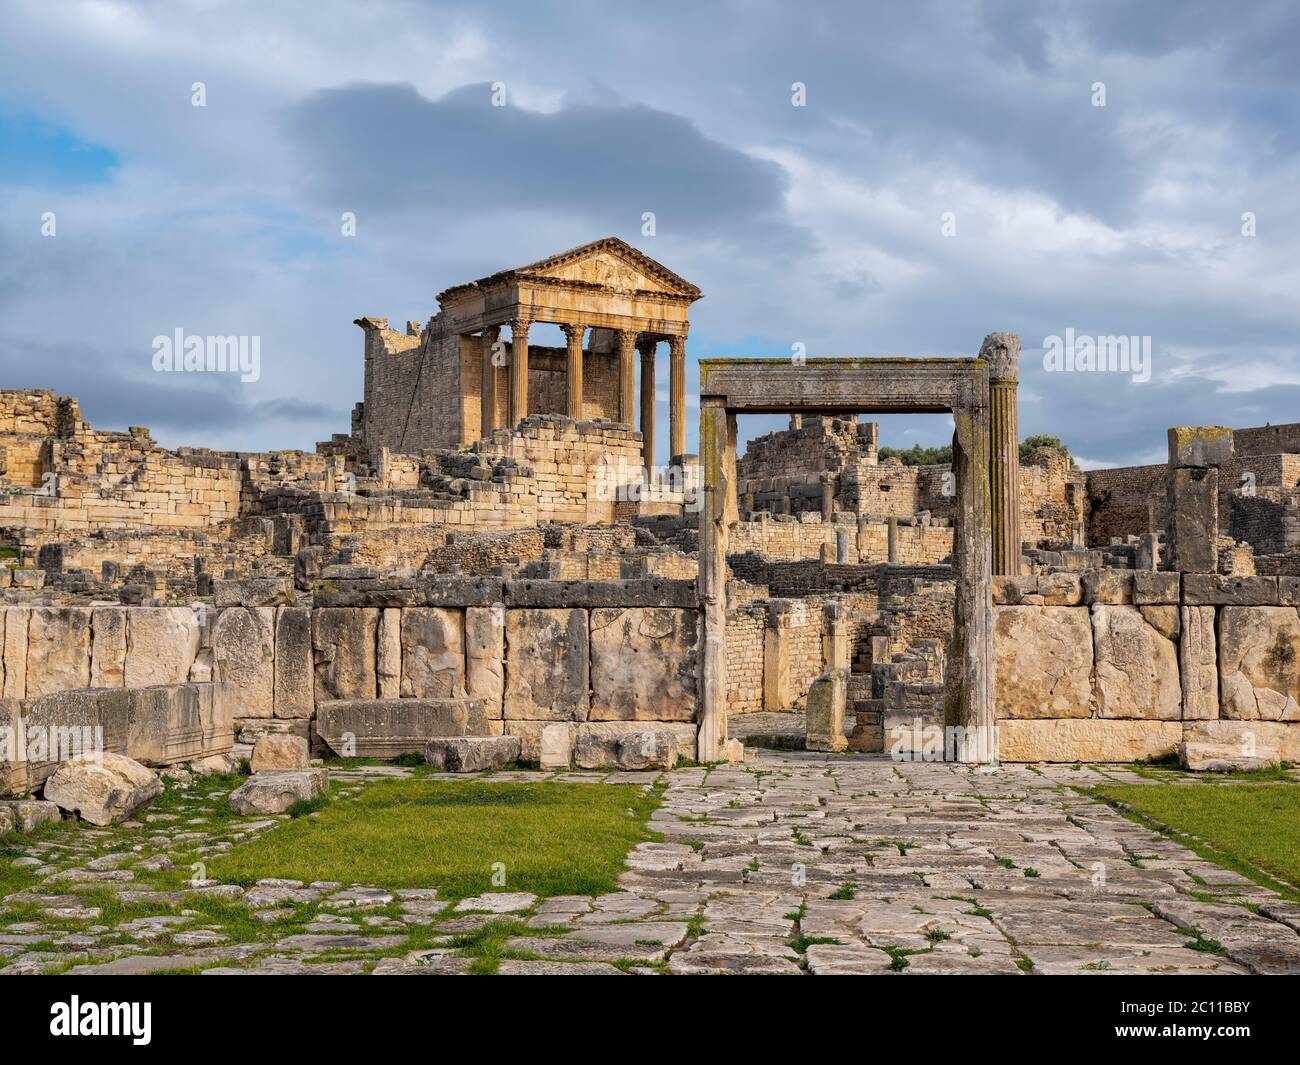 L'ancien site archéologique romain de Dougga (Thugga), Tunisie avec son temple de Jupiter bien conservé, ses arches et ses colonnes. Banque D'Images